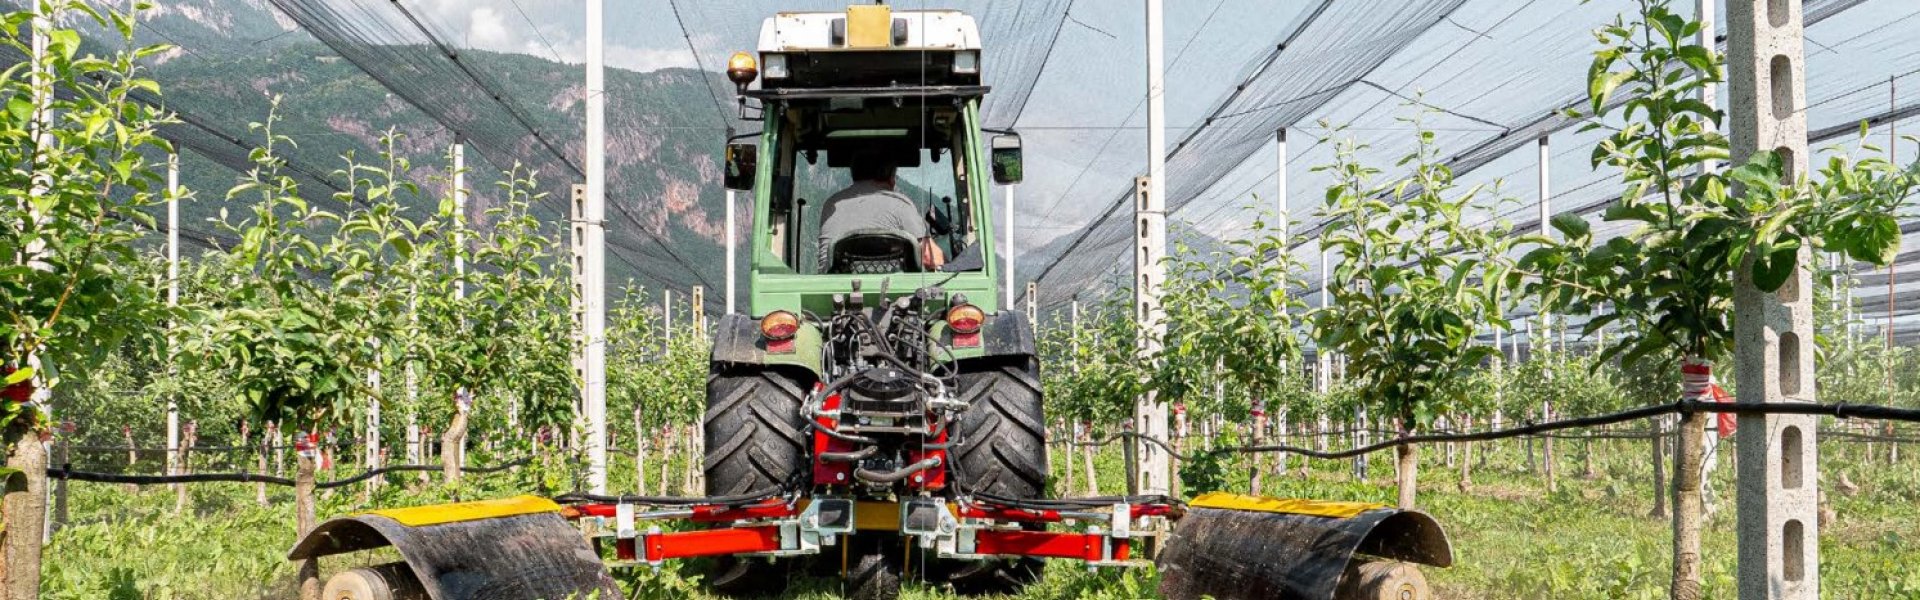 ILMER rozšířená nabídka strojů - Travní sekačky, nosiče nářadí pro likvidaci plevelů